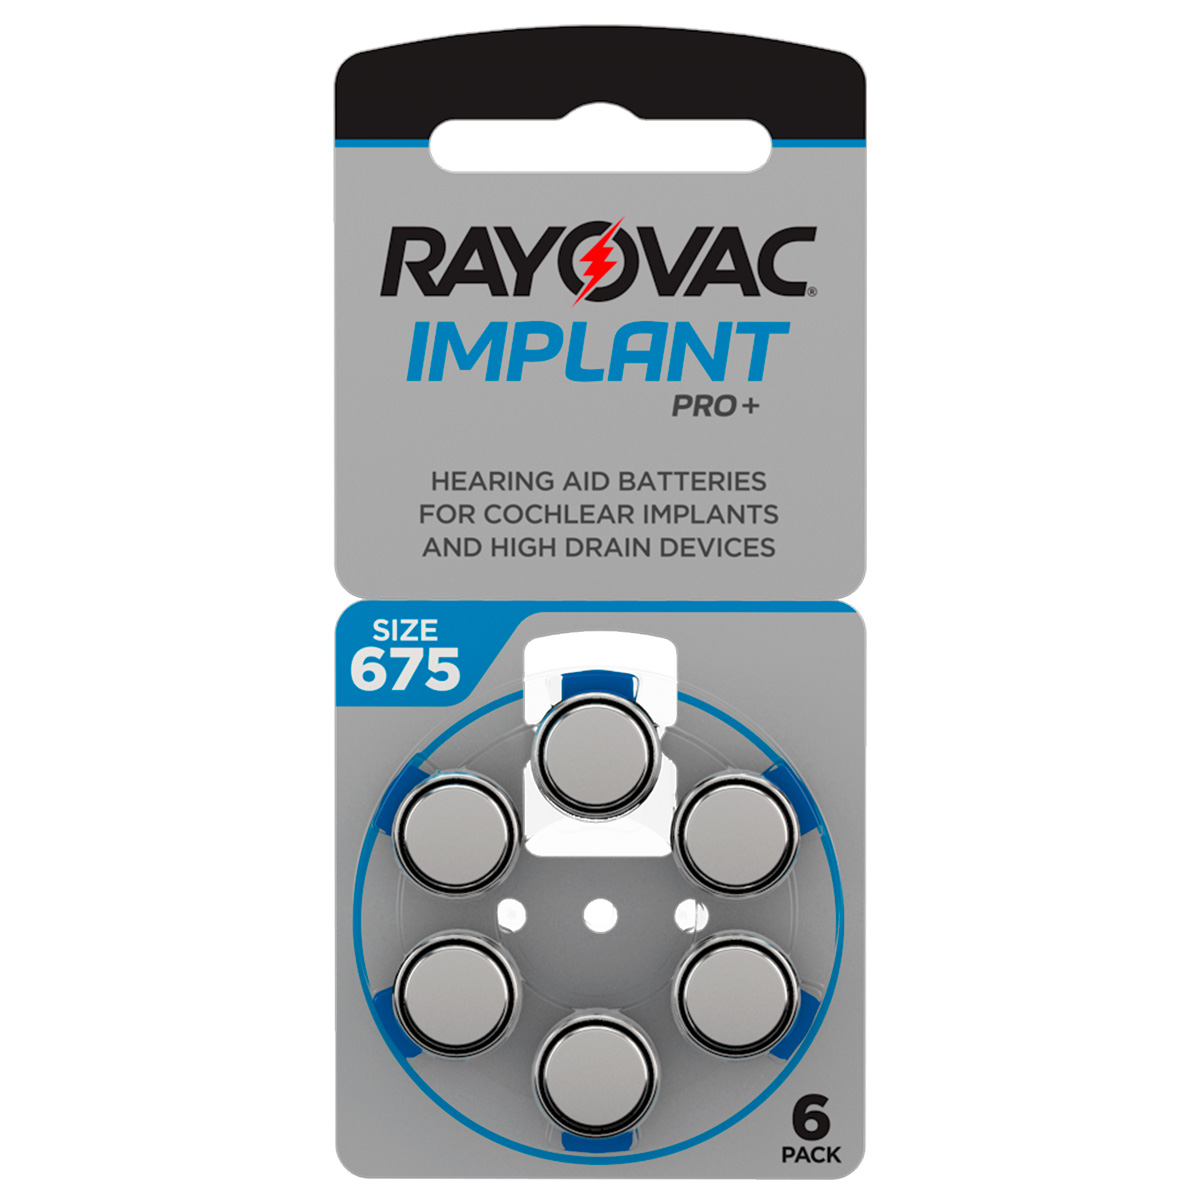 Rayovac Implant Pro+, 6 piles auditives No. 675pour les implants cochléaires, plaquette